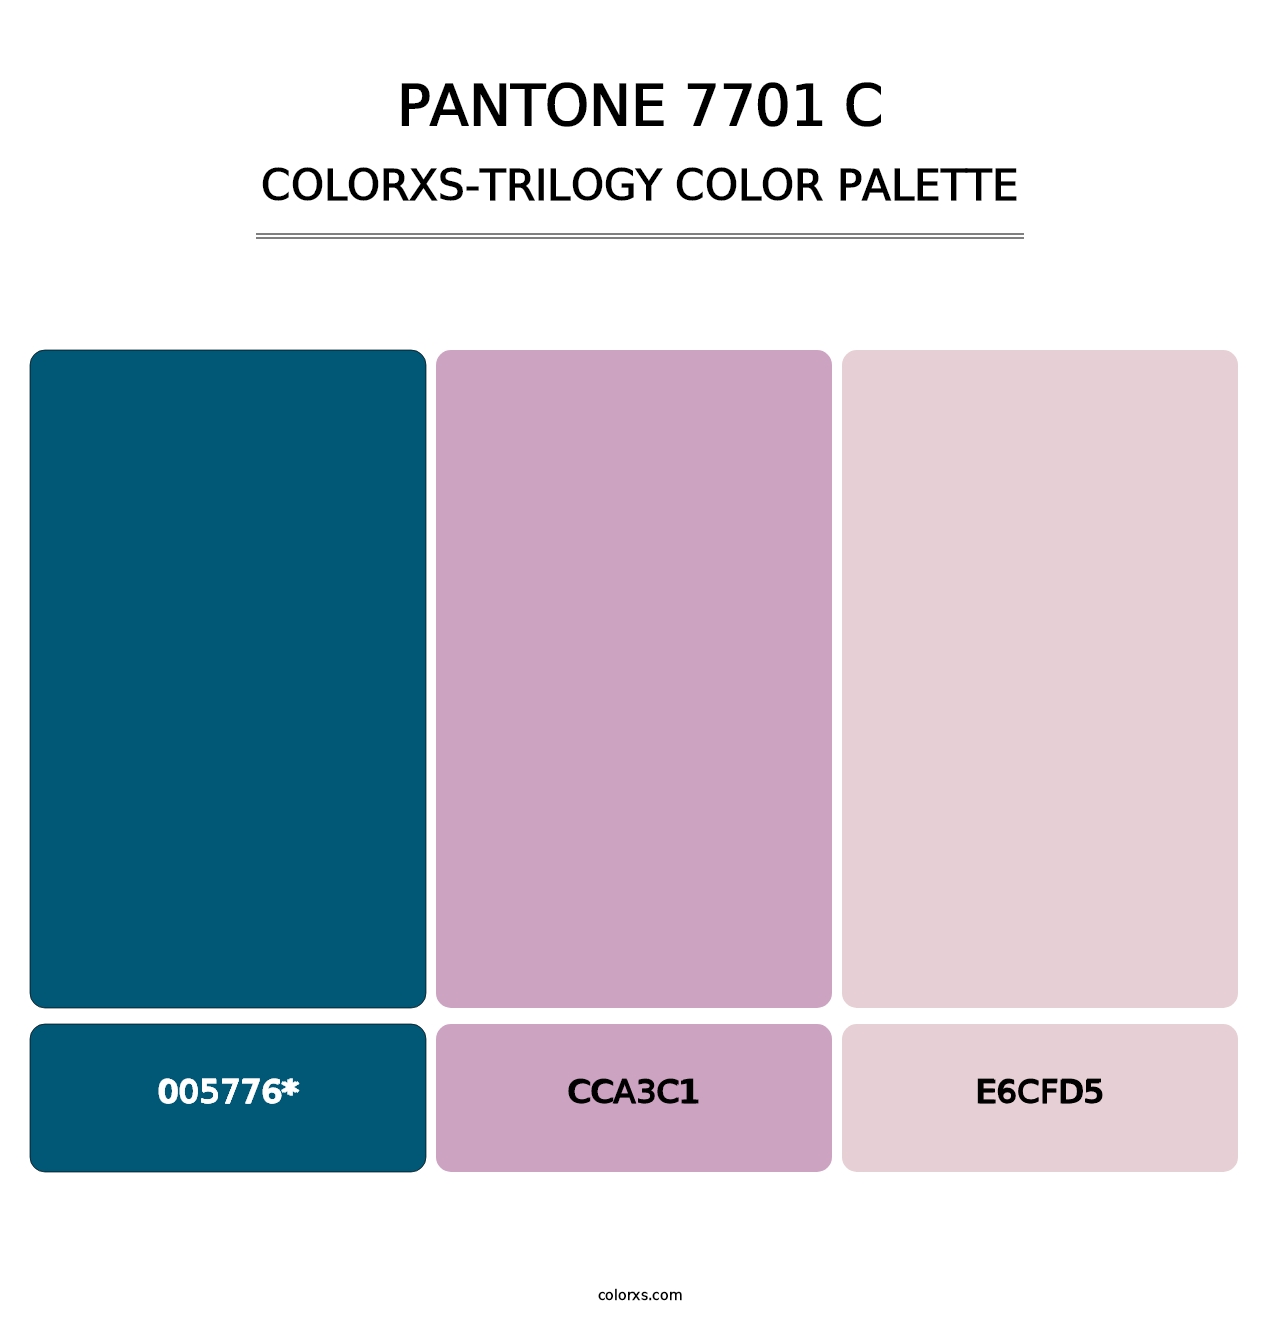 PANTONE 7701 C - Colorxs Trilogy Palette